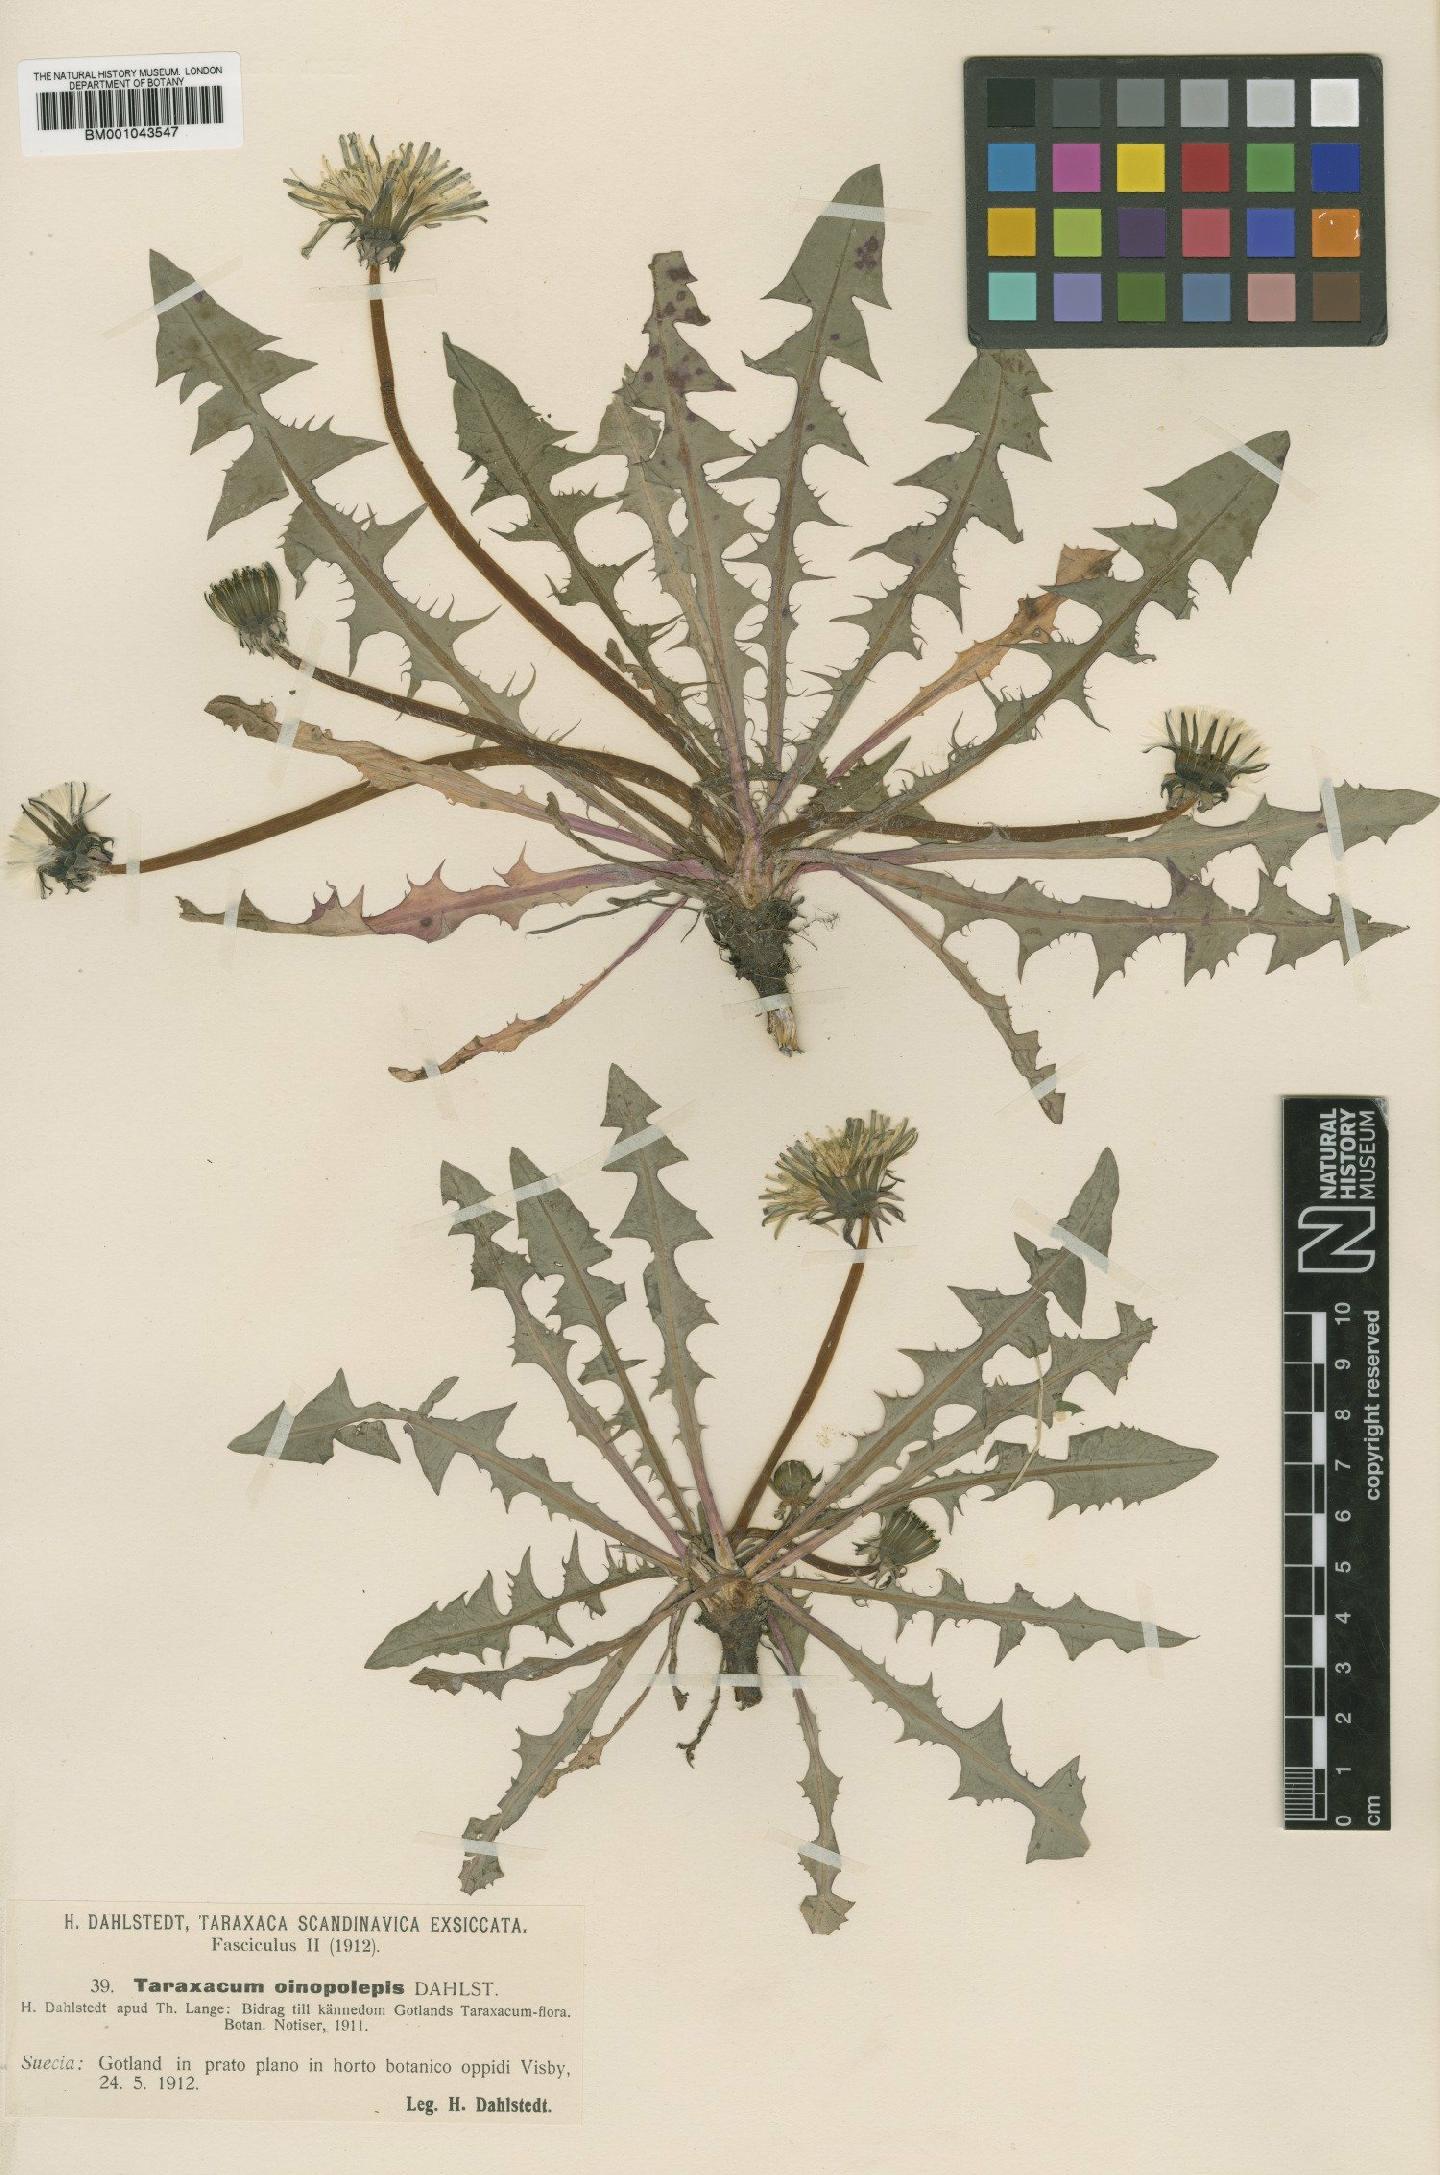 To NHMUK collection (Taraxacum oinopolepis Dahlst; Type; NHMUK:ecatalogue:2200883)